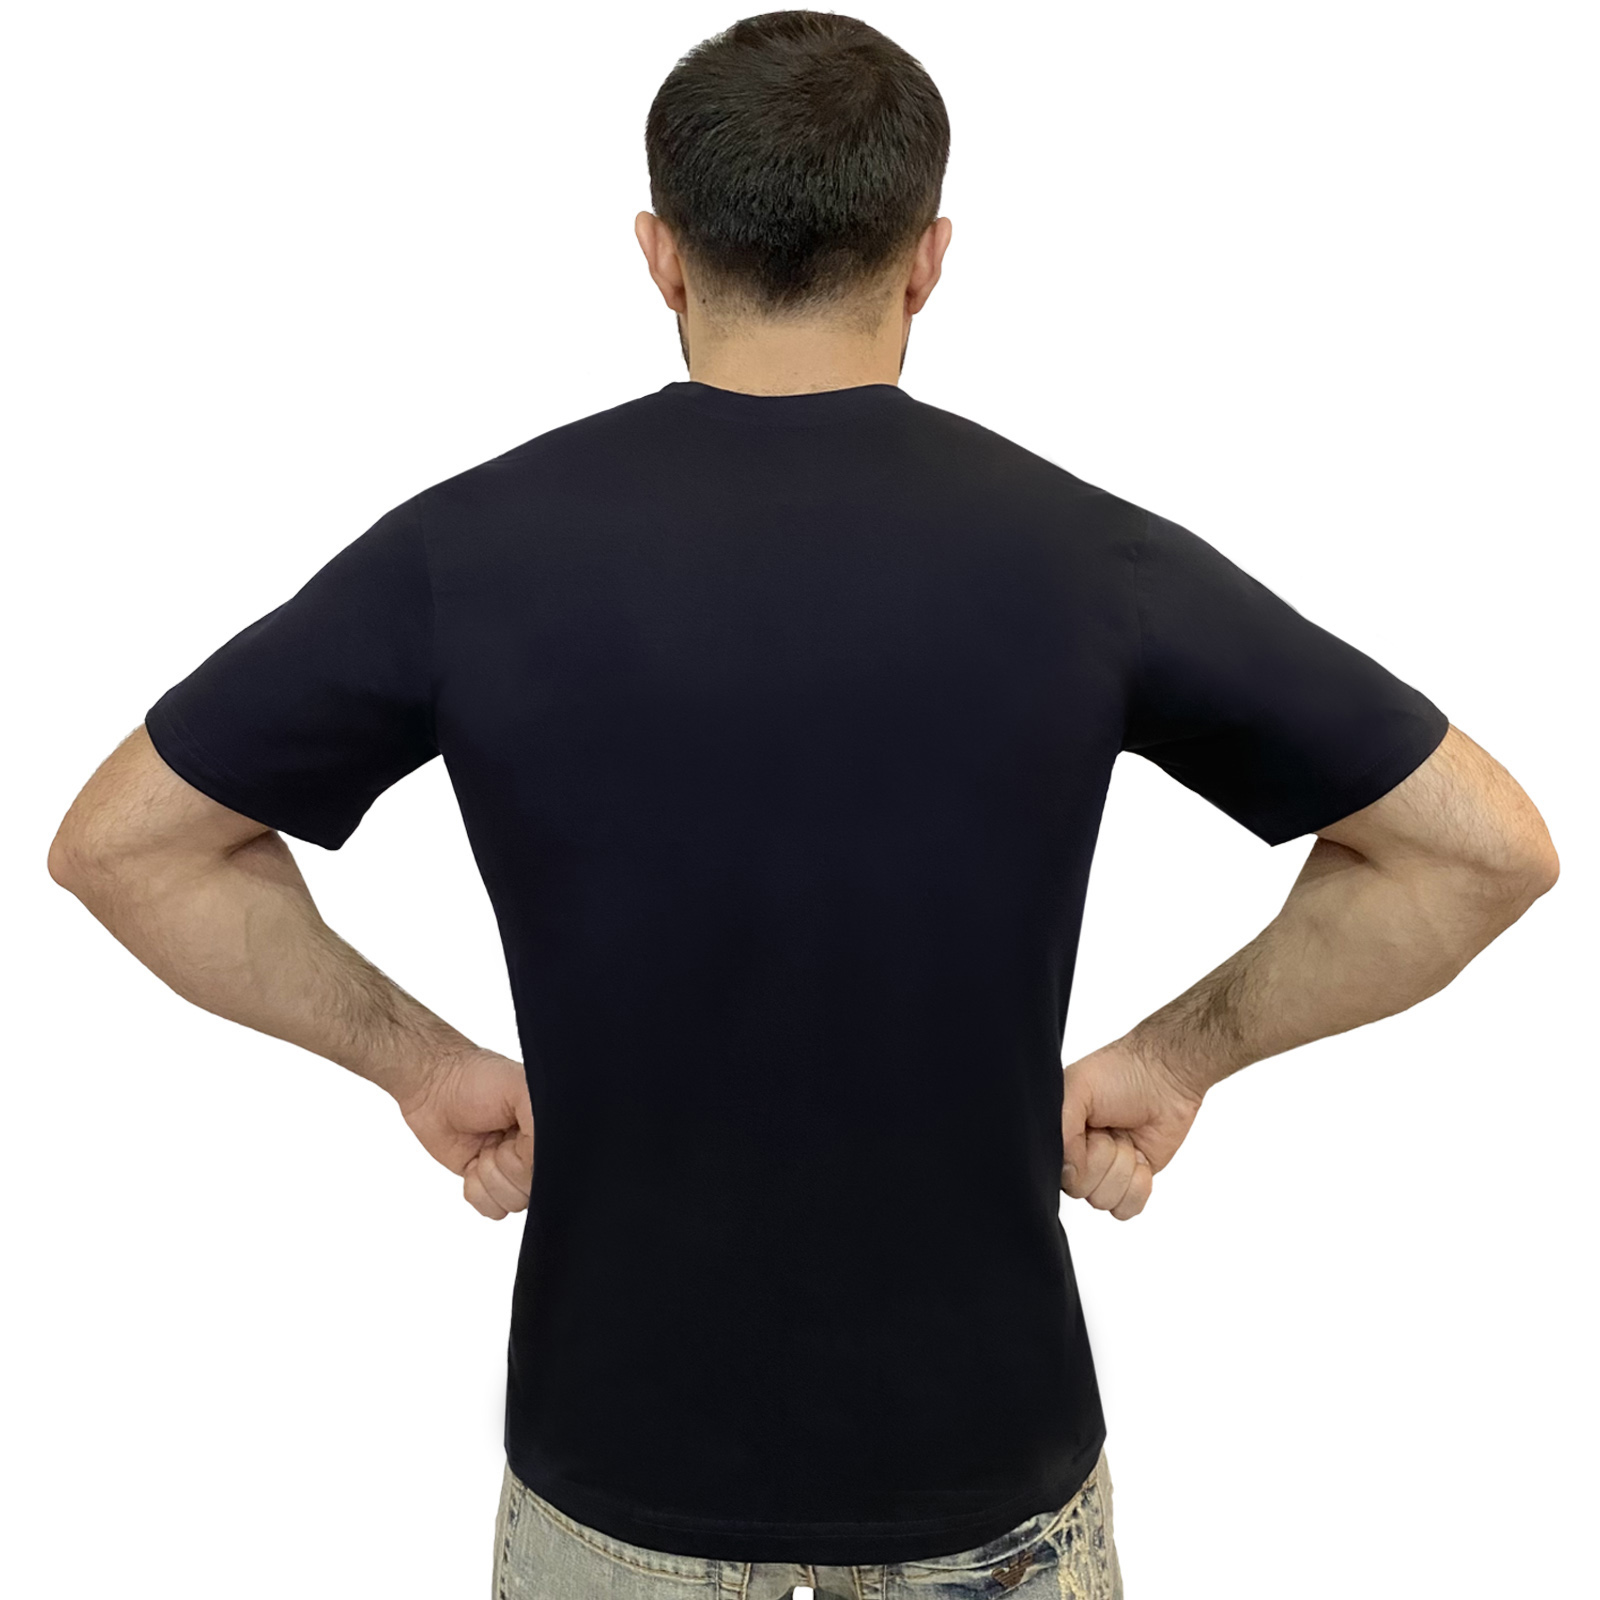 Недорогие мужские футболки оптом и в розницу